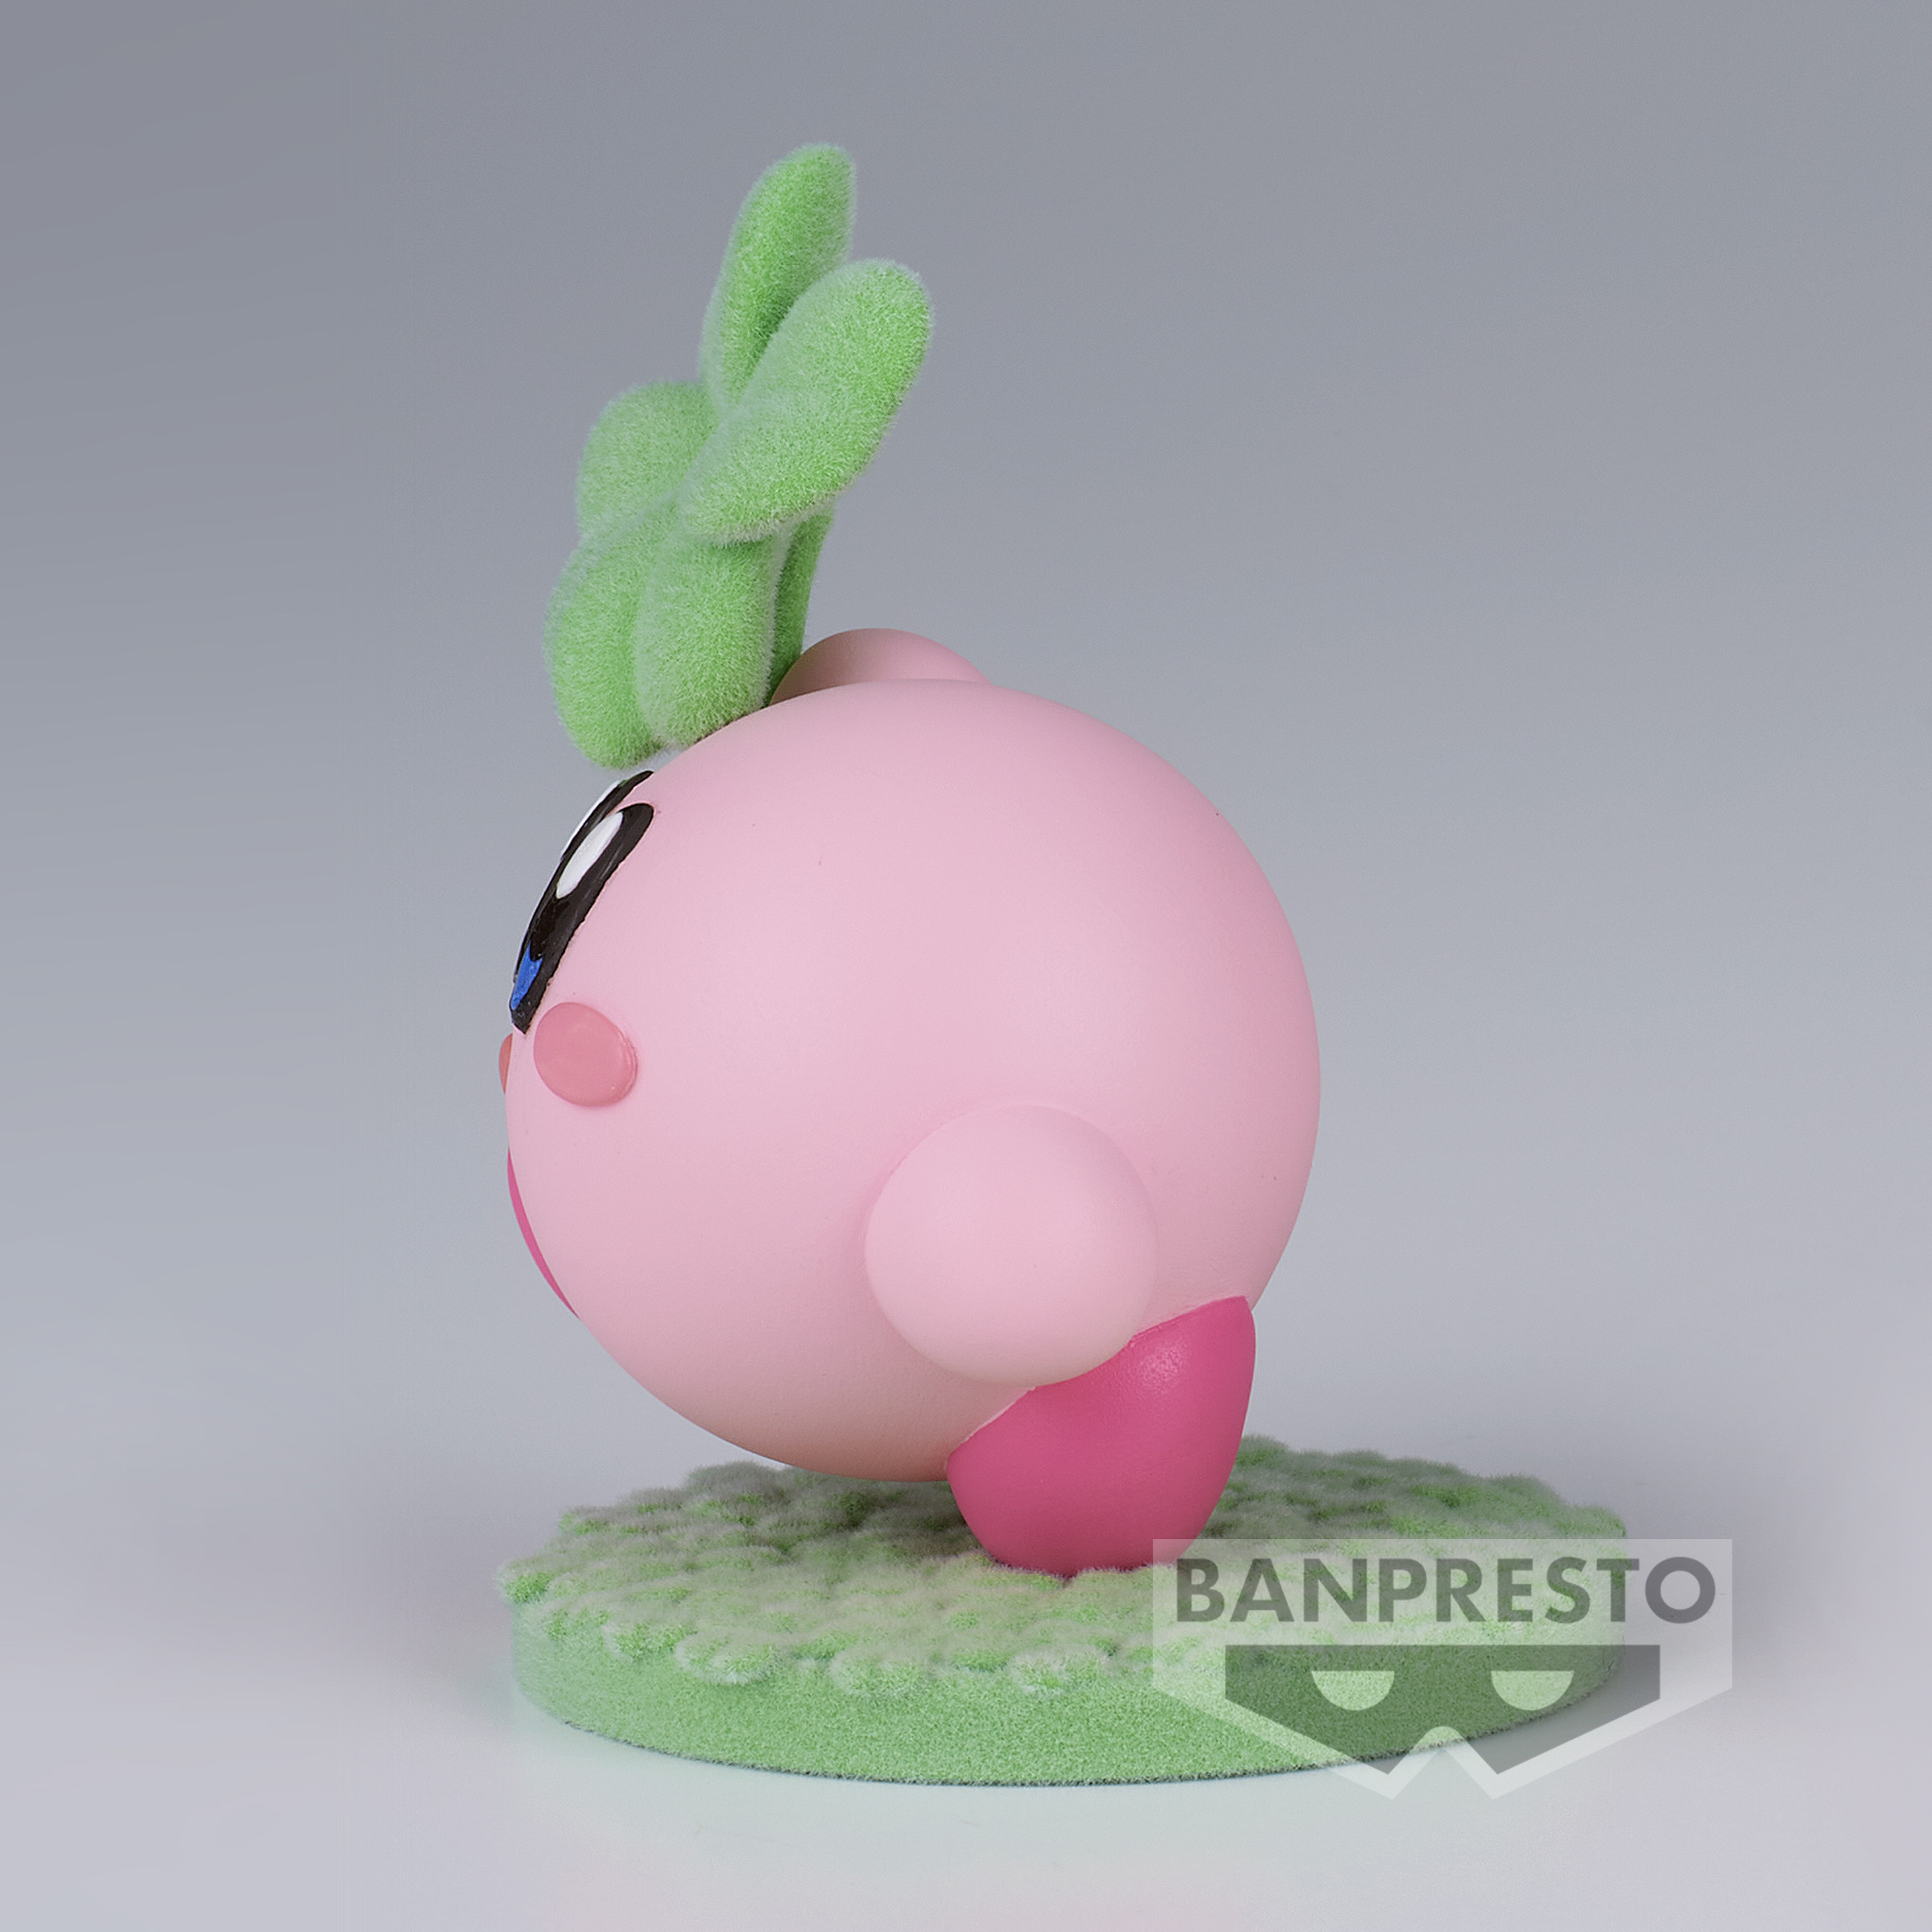 Kirby - Figurine Kirby...